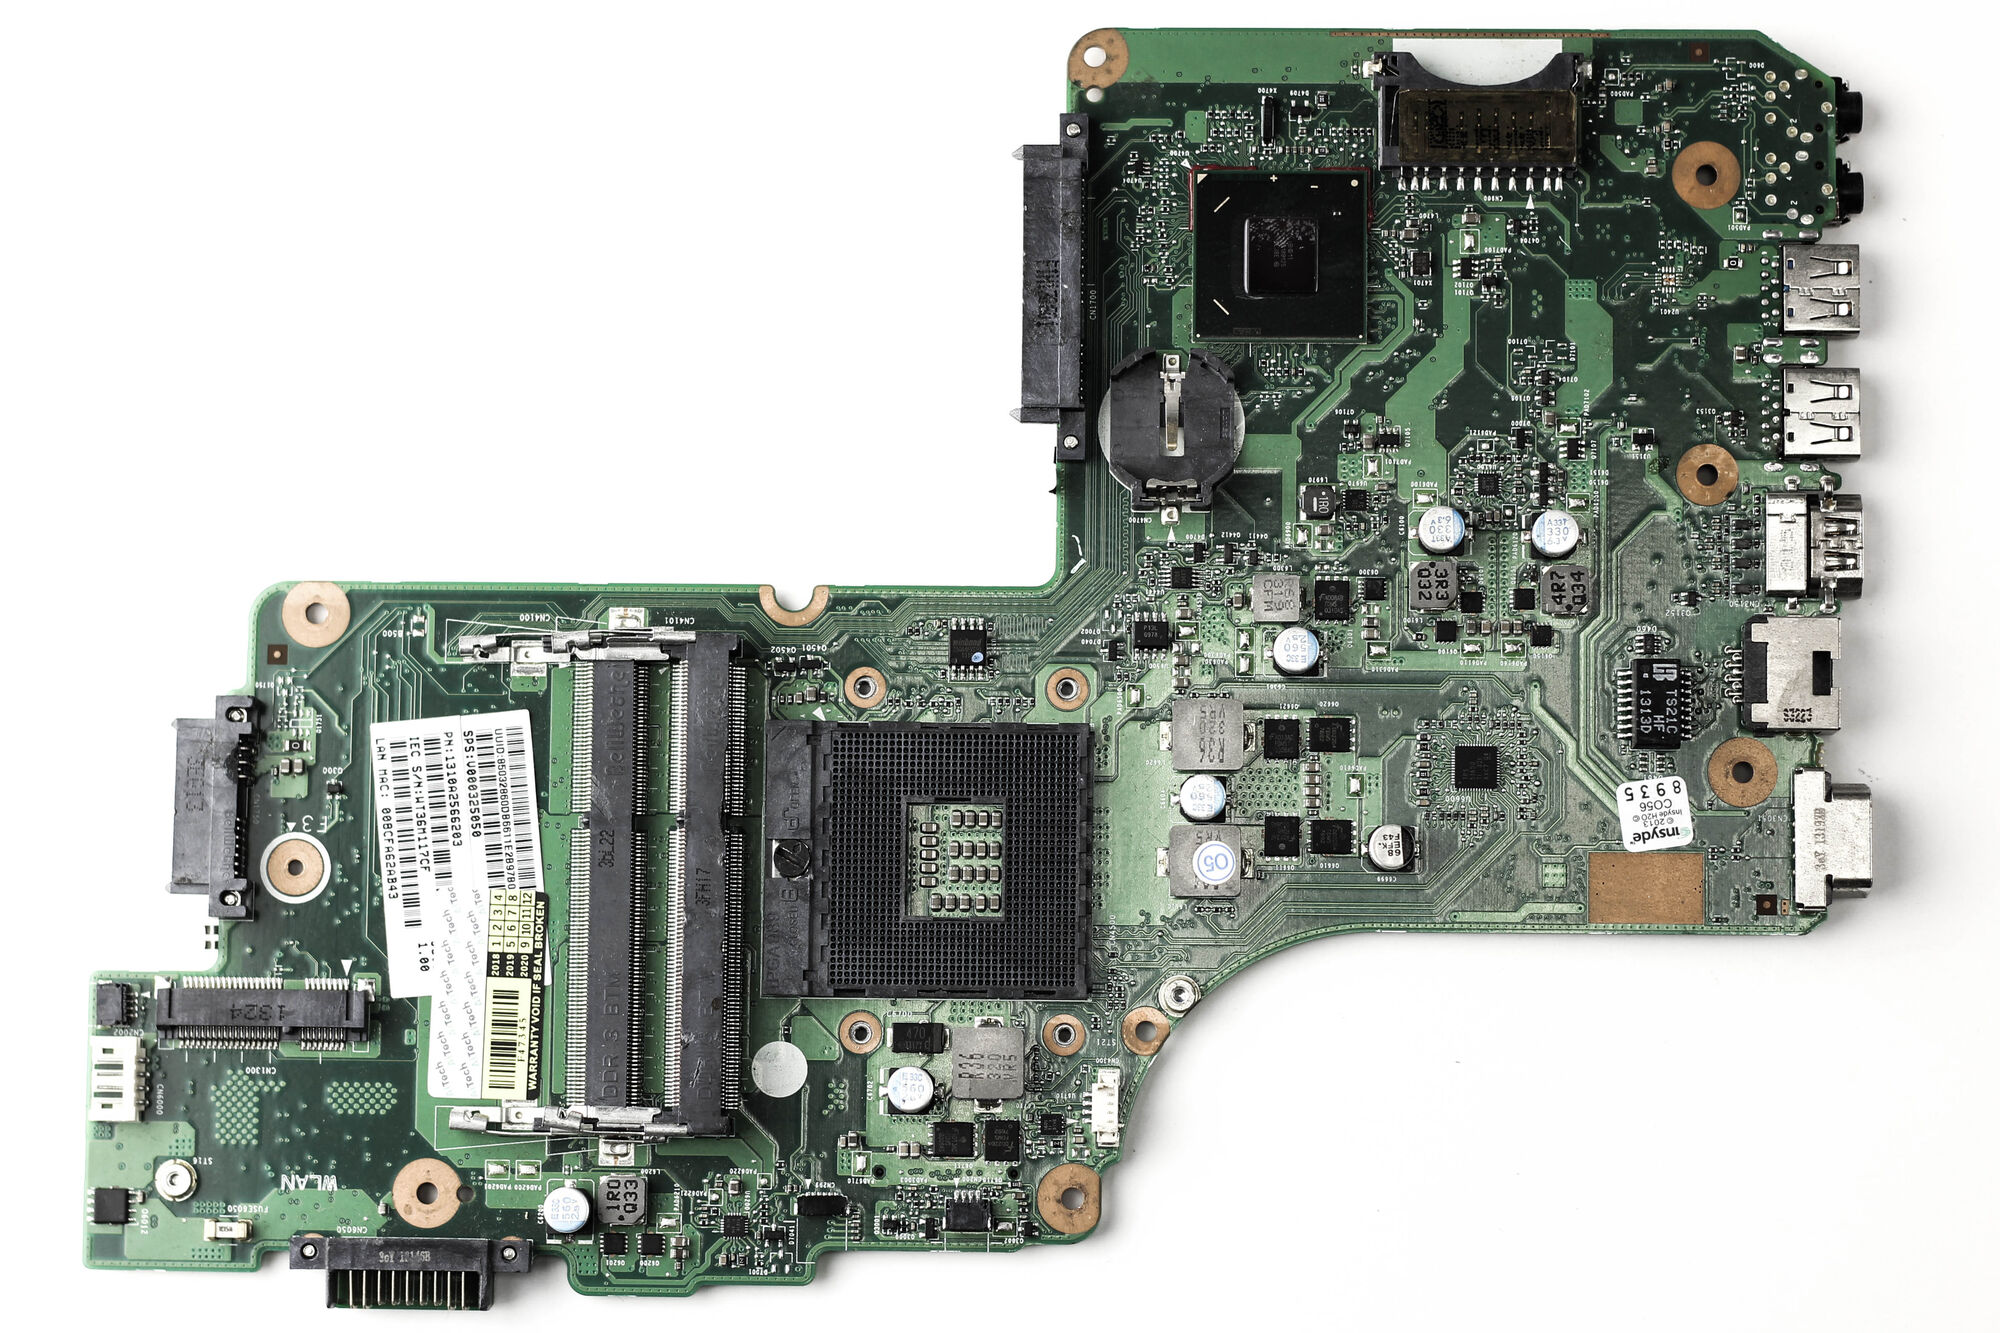 Материнская плата Toshiba C50 C55 HM65 DDR3 UMA DB10F-6050A2566201-MB-A02 PGA989